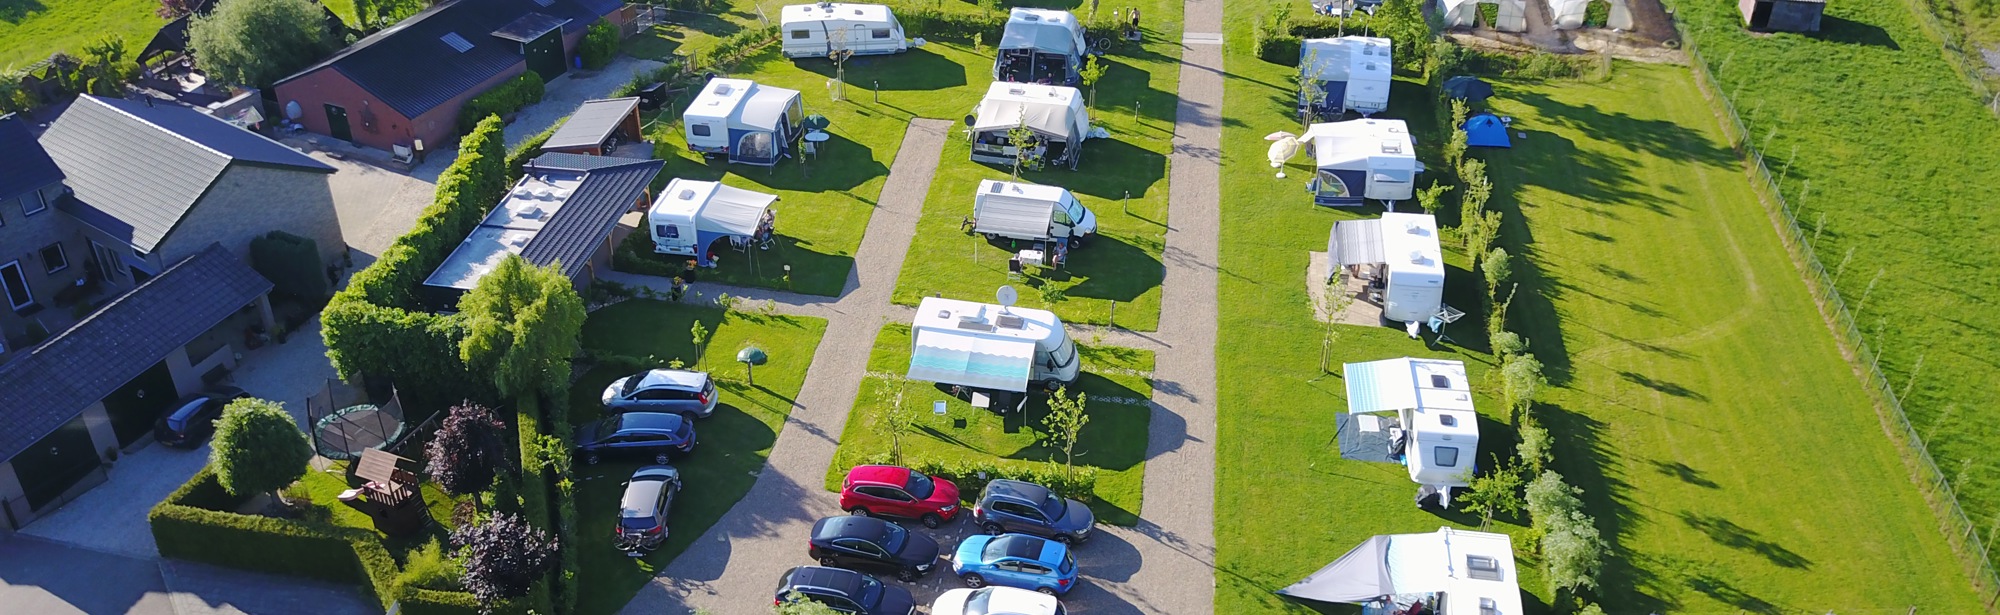 Droneshot van de campingplaats met campers en caravans. 